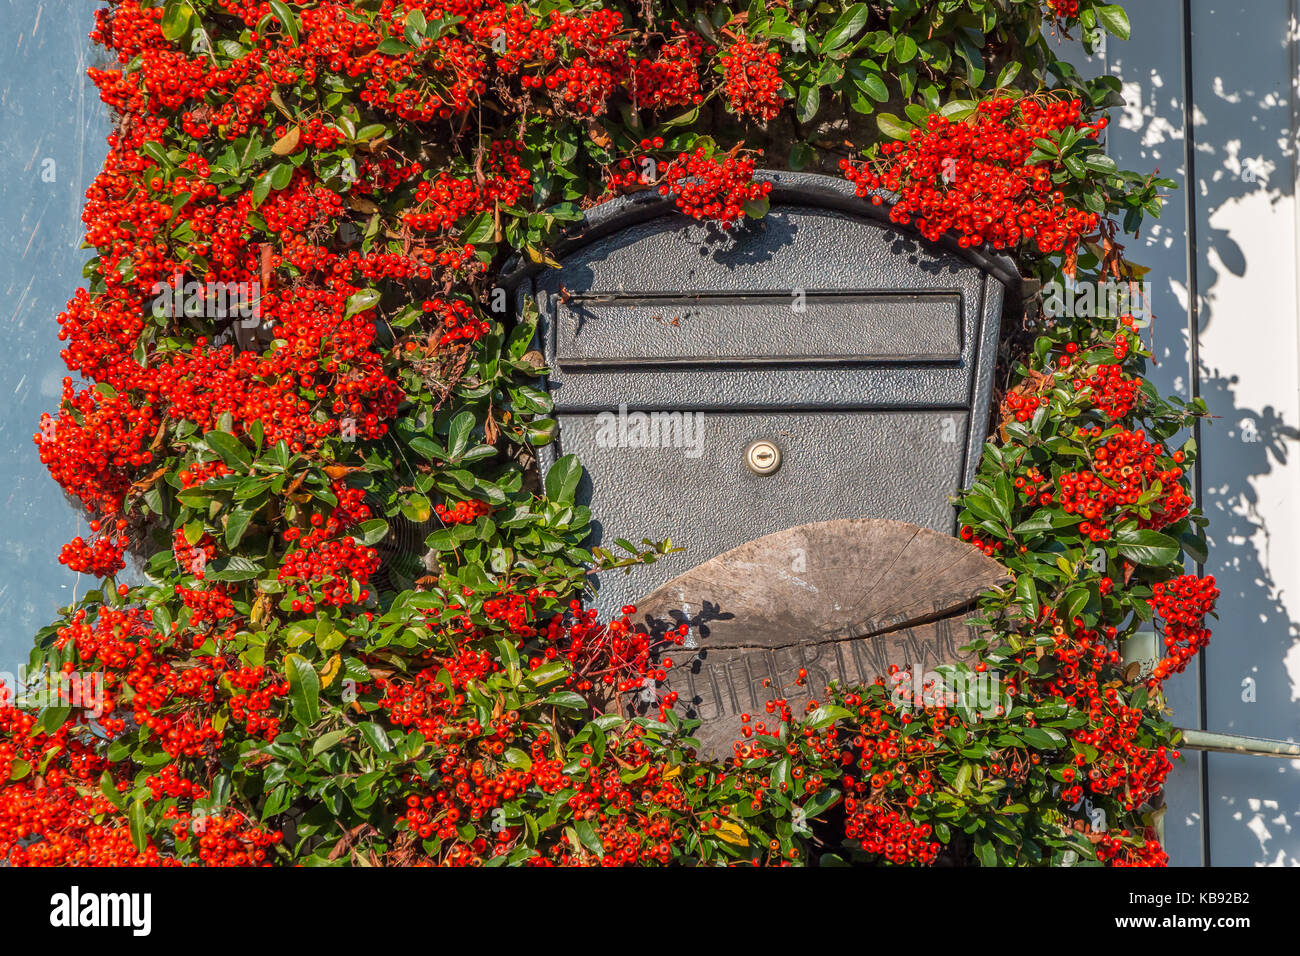 Herbst Farbe, leuchtend roten Beeren auf einem holzbär (firethorn) Pflanze um einen Briefkasten, September 2017 Stockfoto